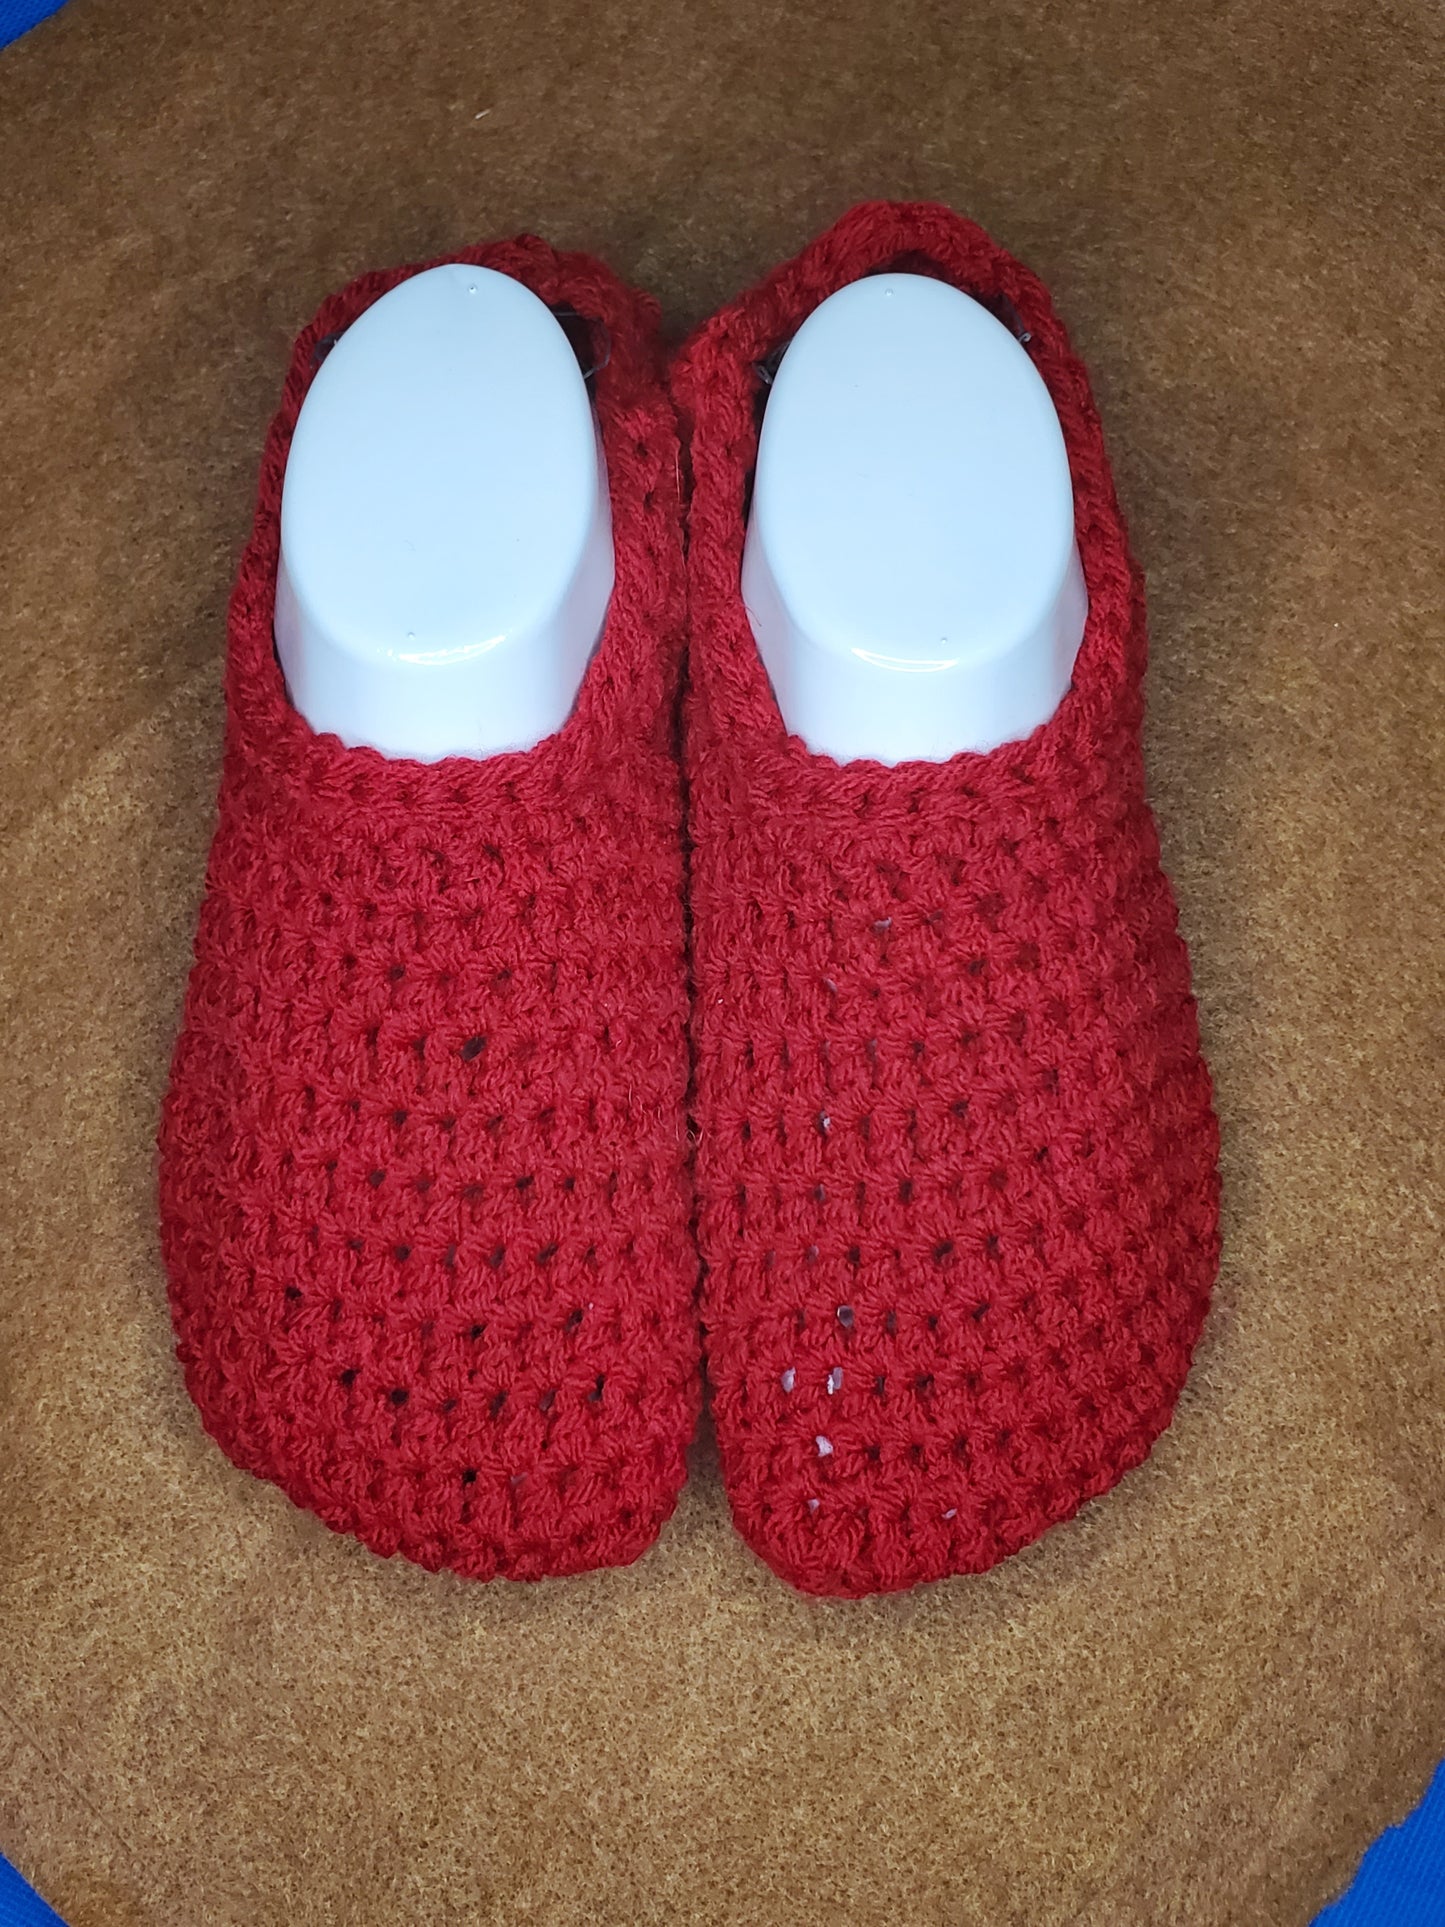 Slippers - crocheted slippers